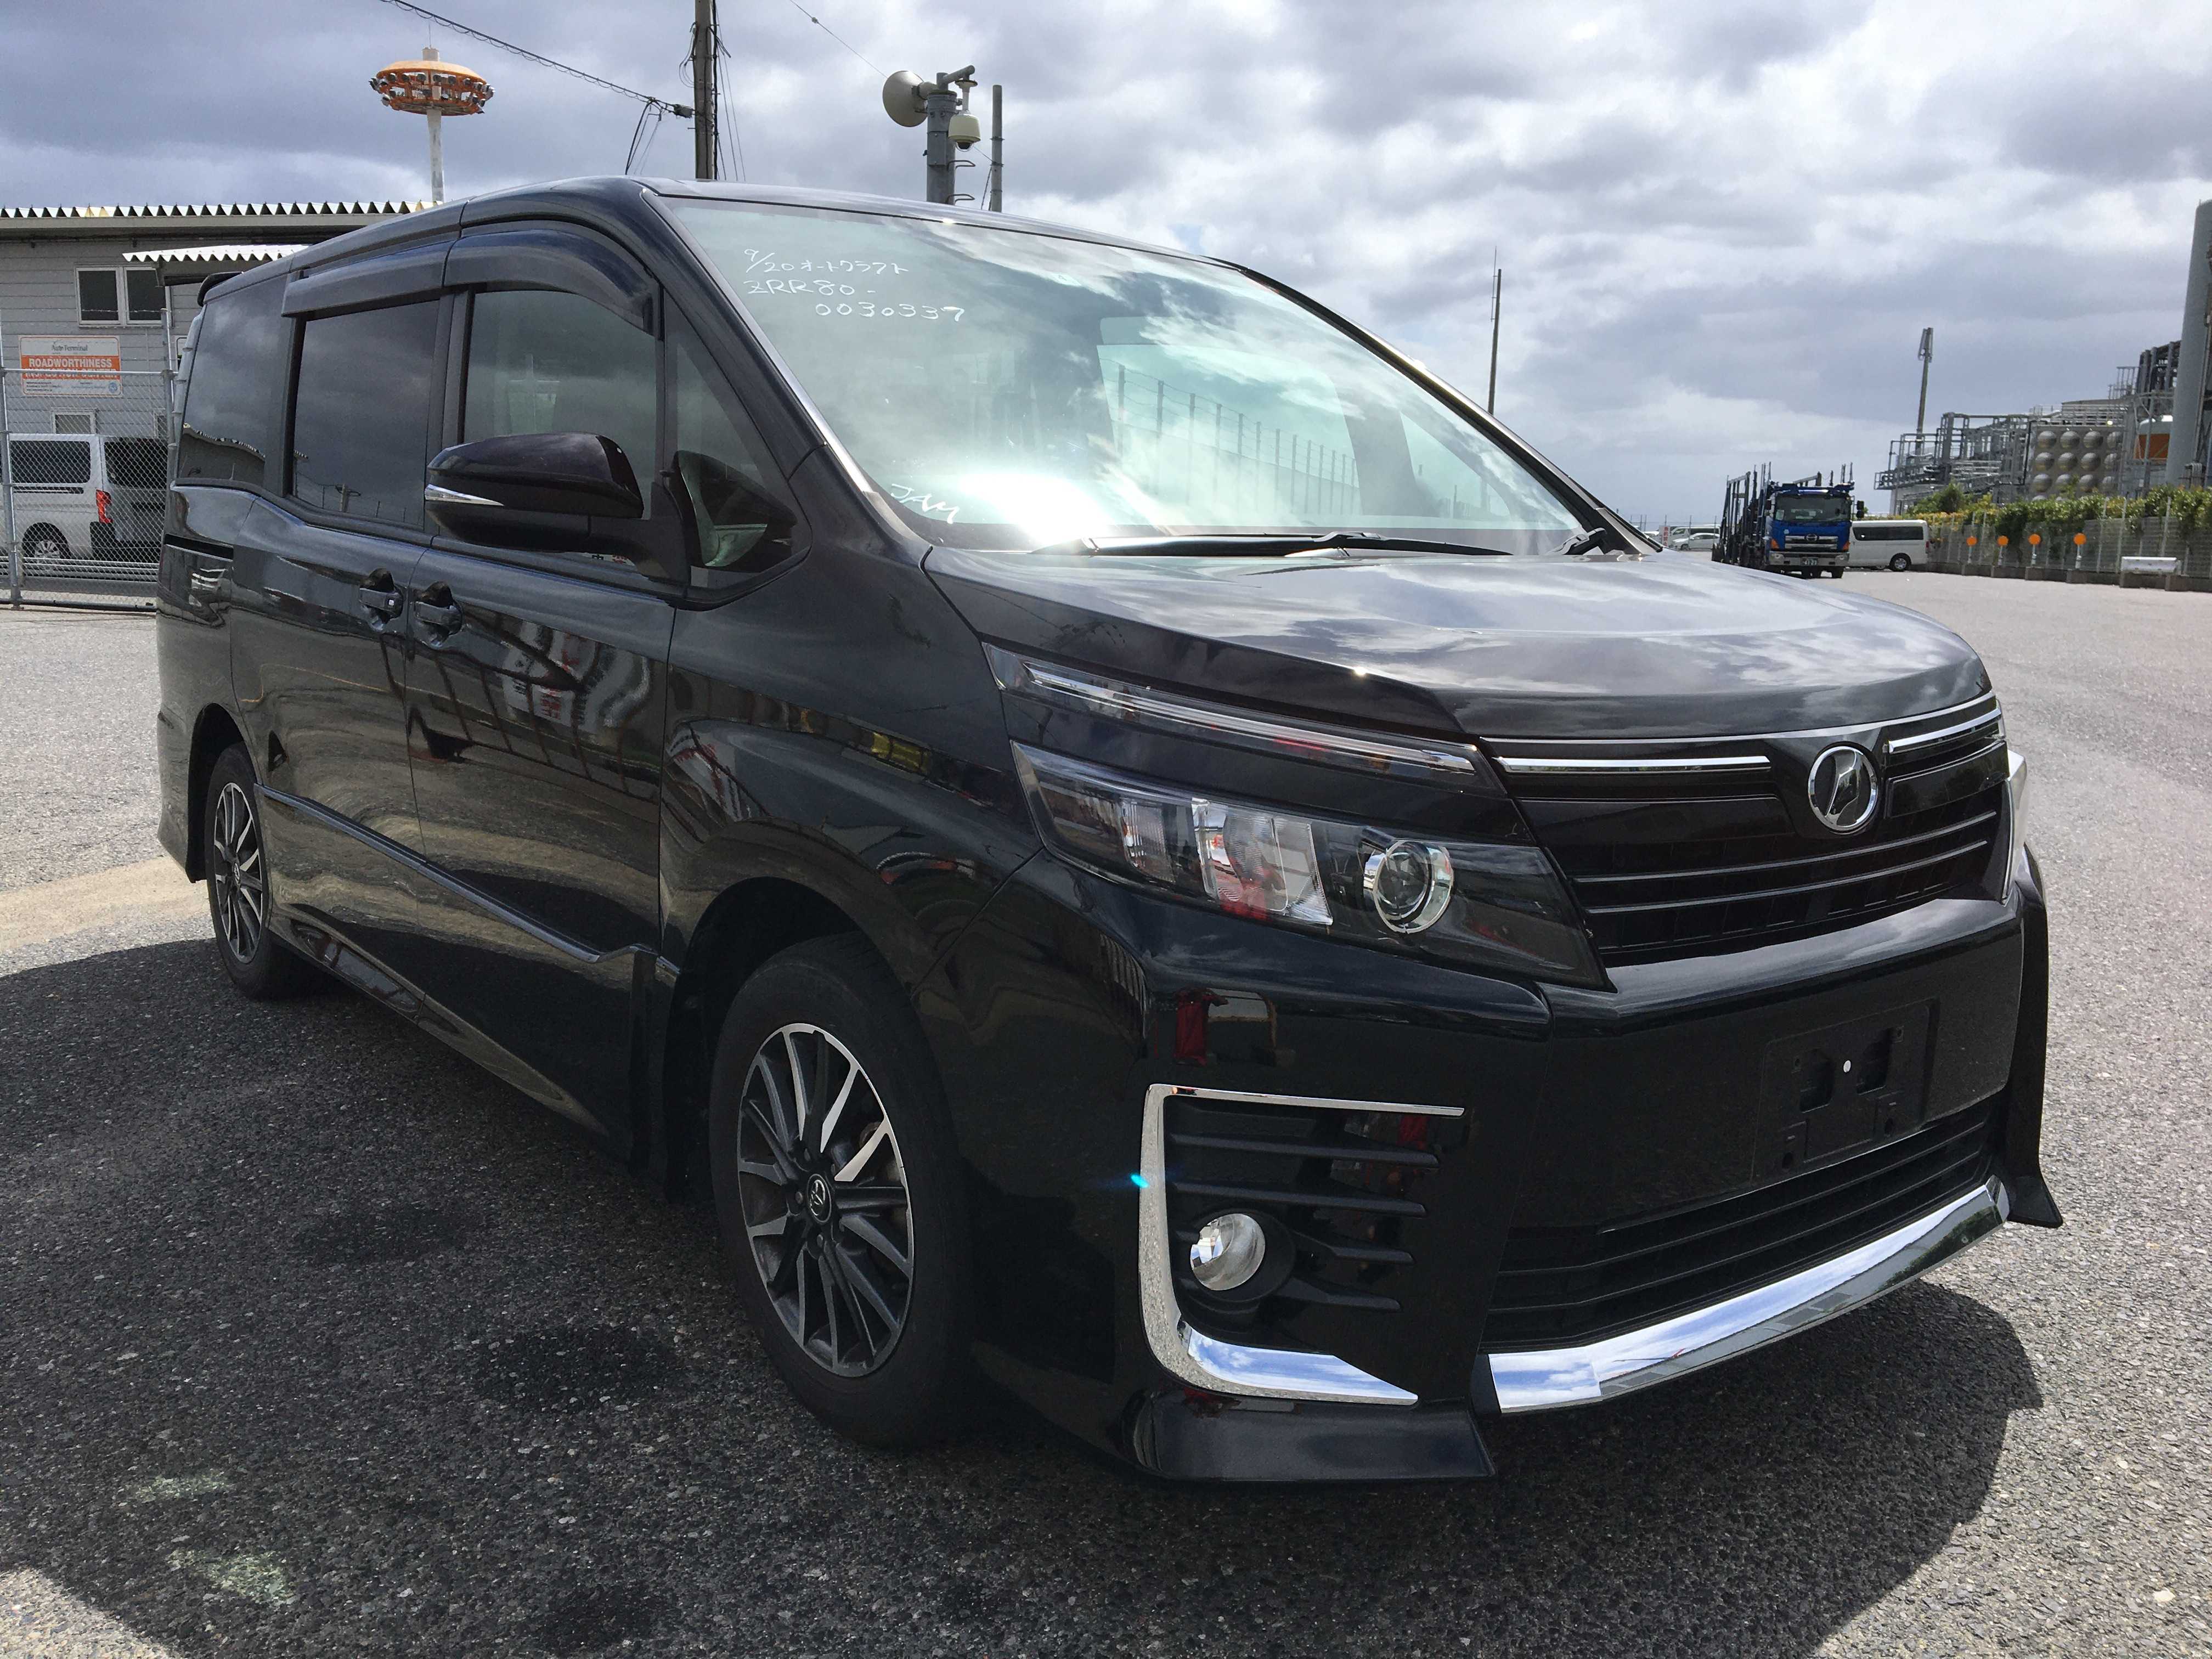 Toyota Voxy 2014